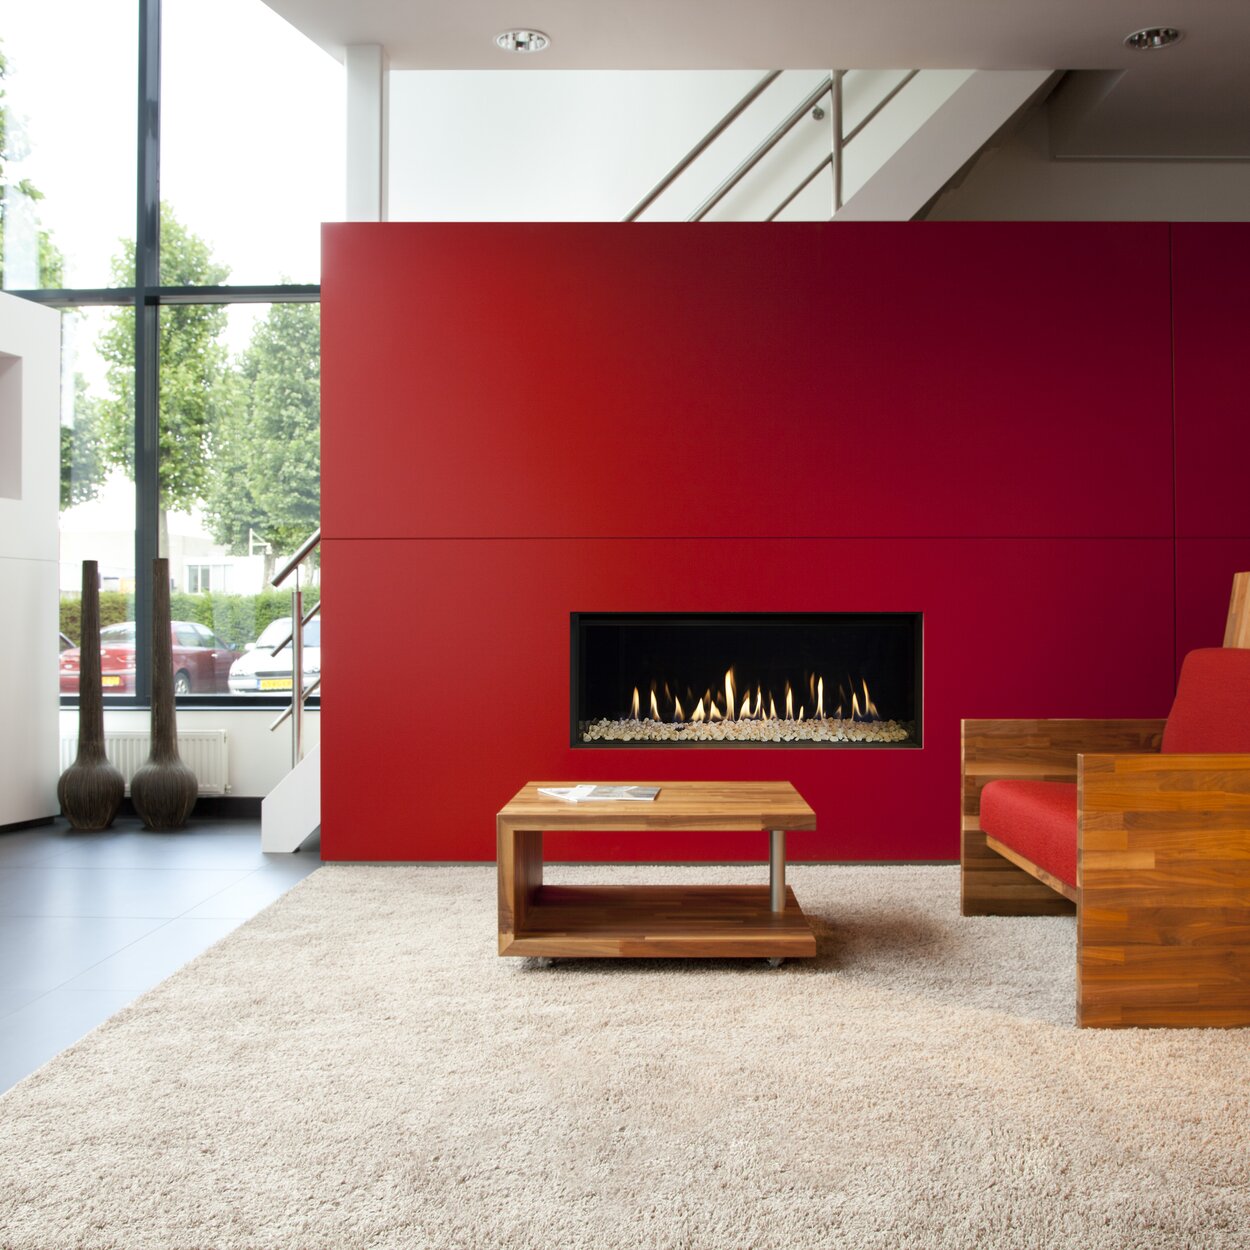 Cheminée à gaz G100/41F de Kalfire avec des pierres blanches dans la chambre de combustion dans un appartement avec des murs en rouge et blanc et des meubles en bois